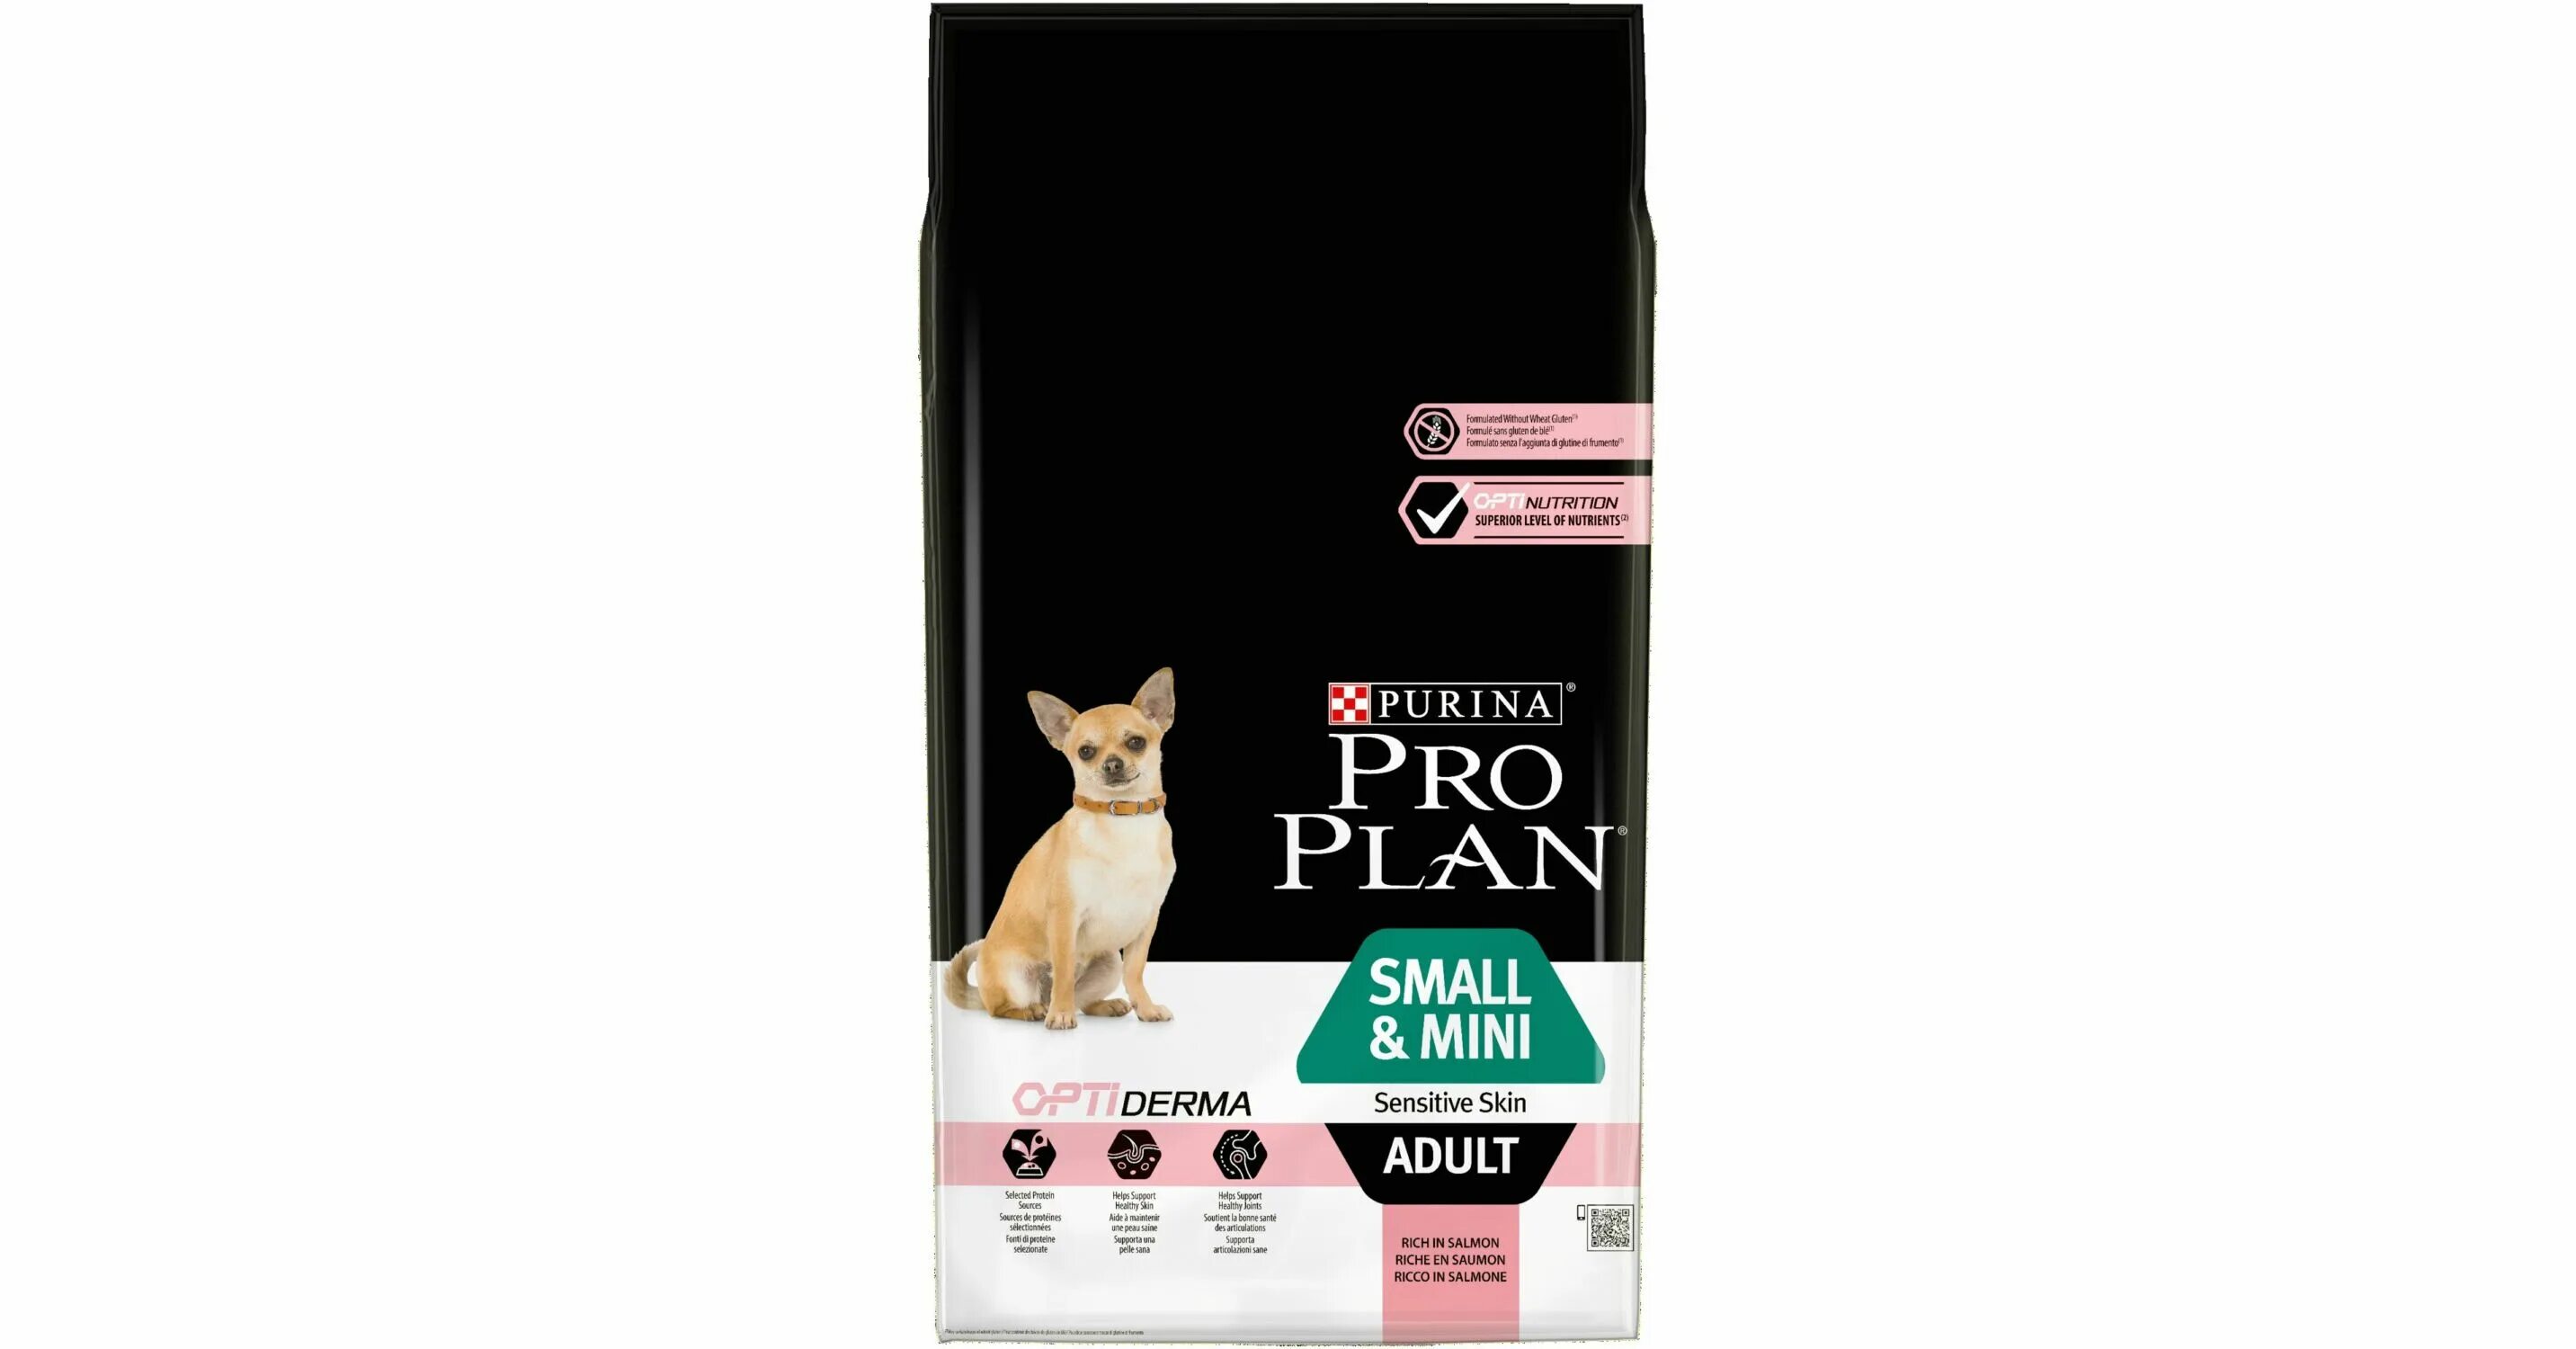 Проплан для собак мелких ягненком. Проплан ОПТИДЕРМА для собак. Корм для собак Purina Pro Plan OPTIDERMA 20кг. Про палн для мелких пород 7 кг. Сухой корм для собак Pro Plan 7 кг.